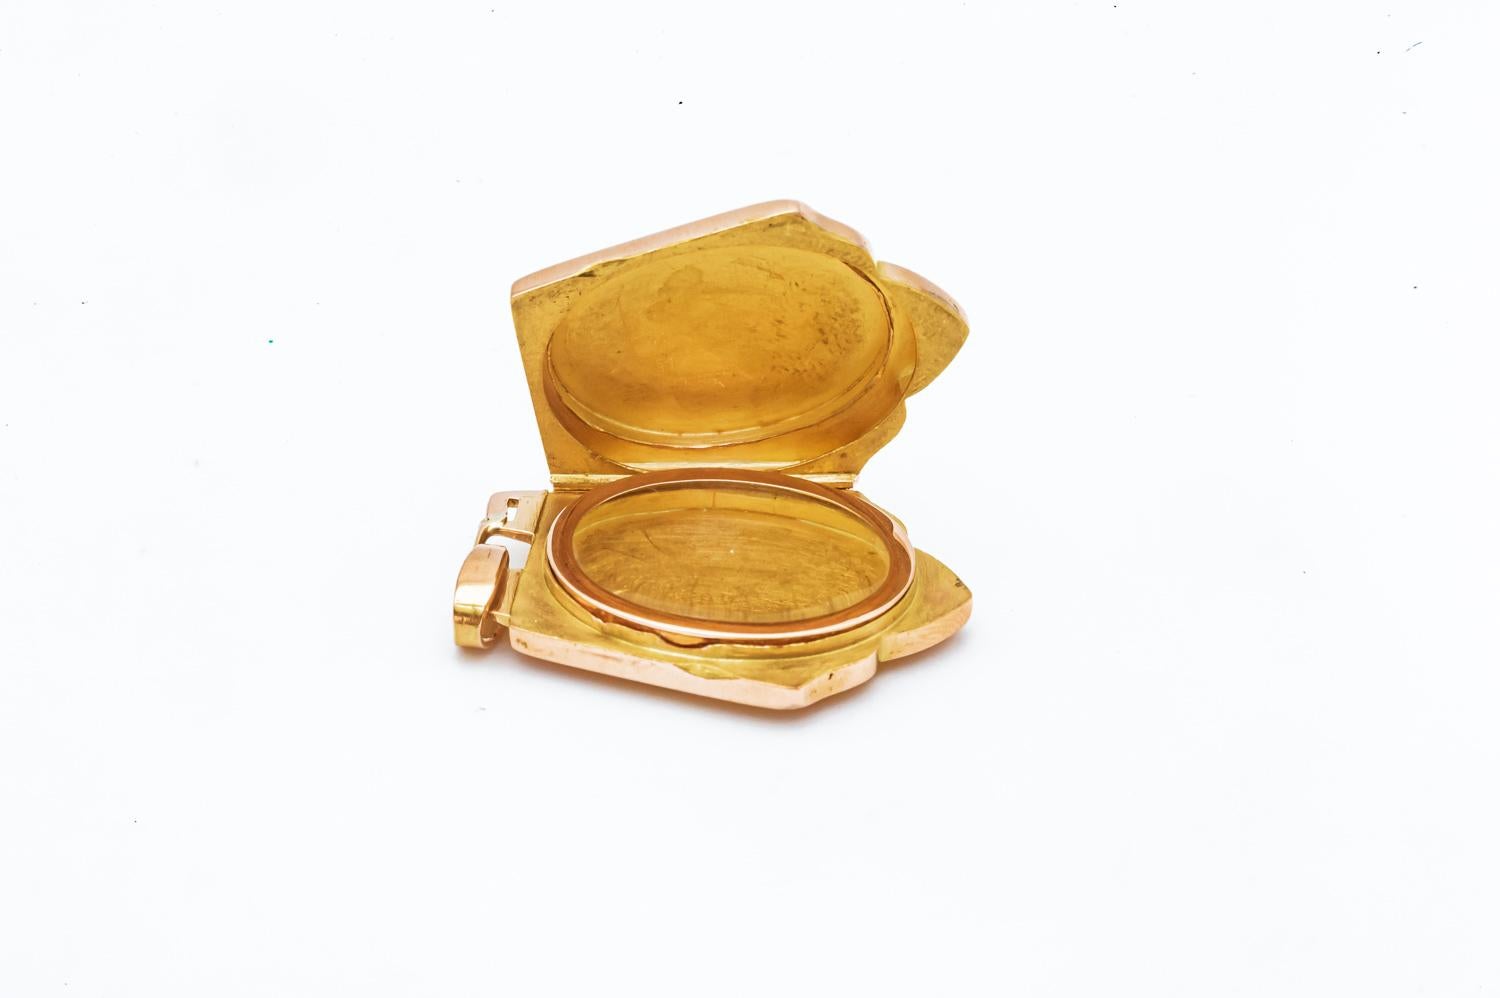 Découvrez ce magnifique pendentif porte-photo d'époque Napoléon III, un bijou d'une rare beauté et d'une grande valeur historique. Réalisé en or rose 18 carats, ce pendentif en forme de bouclier est un véritable trésor d'antan.

La face avant du